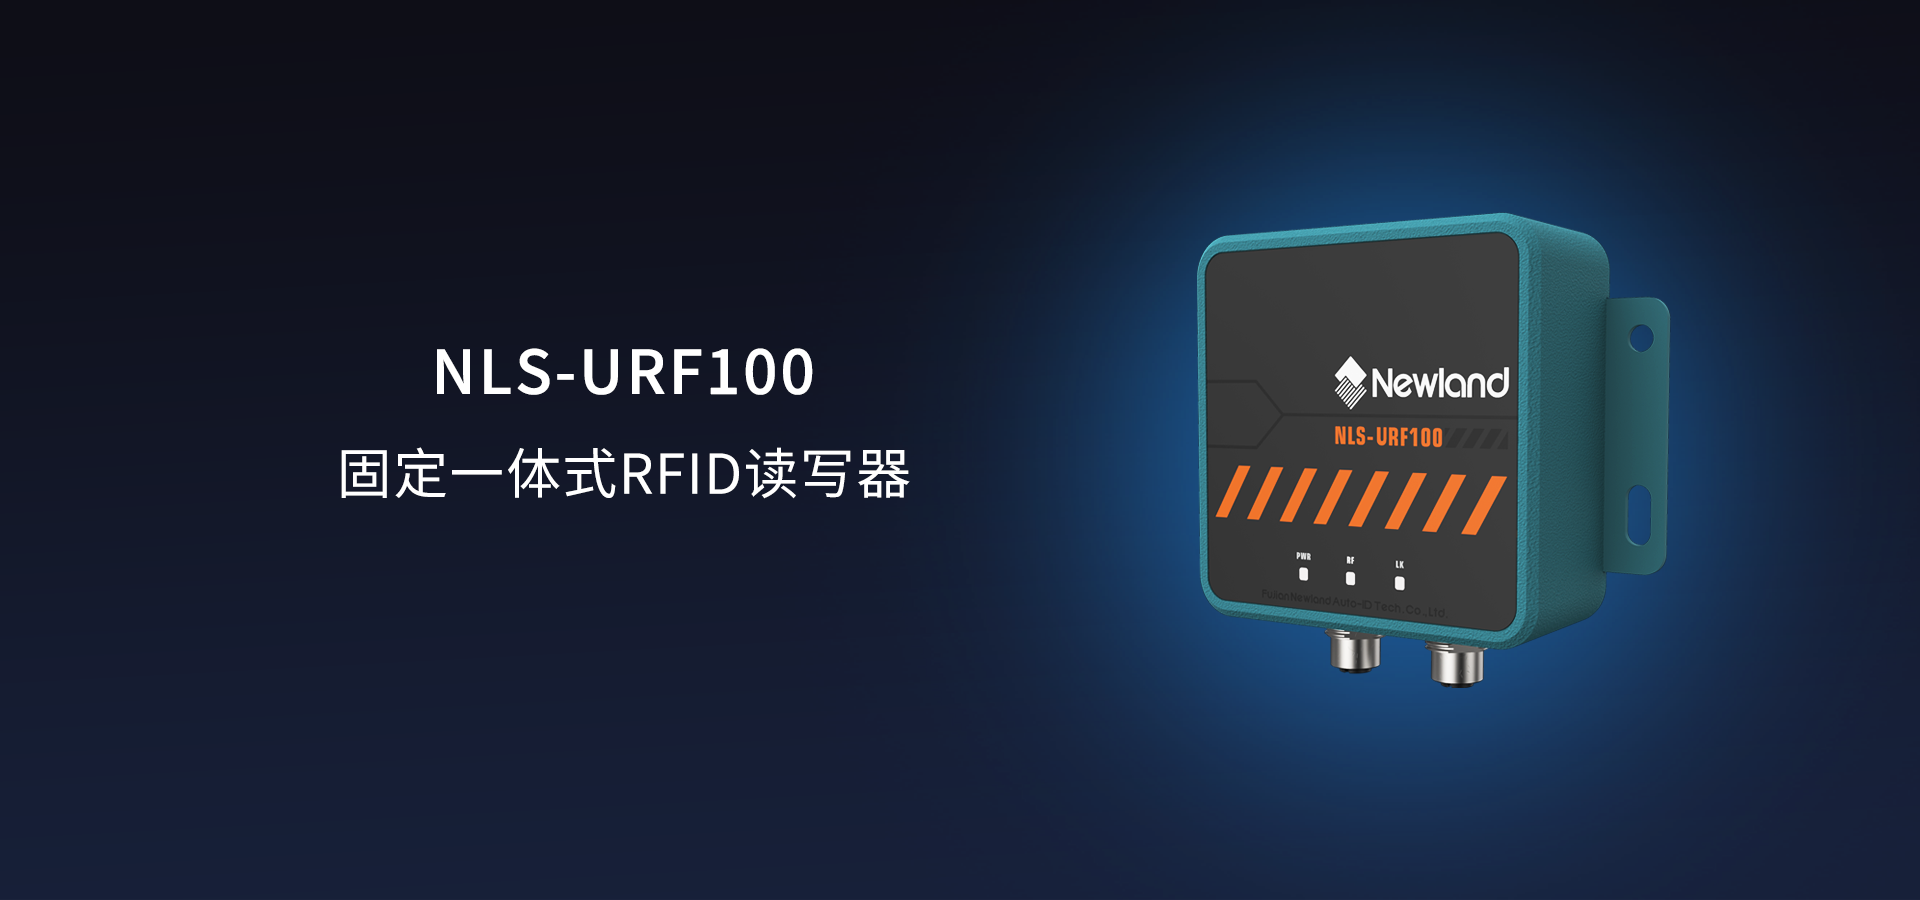 NLS-URF100